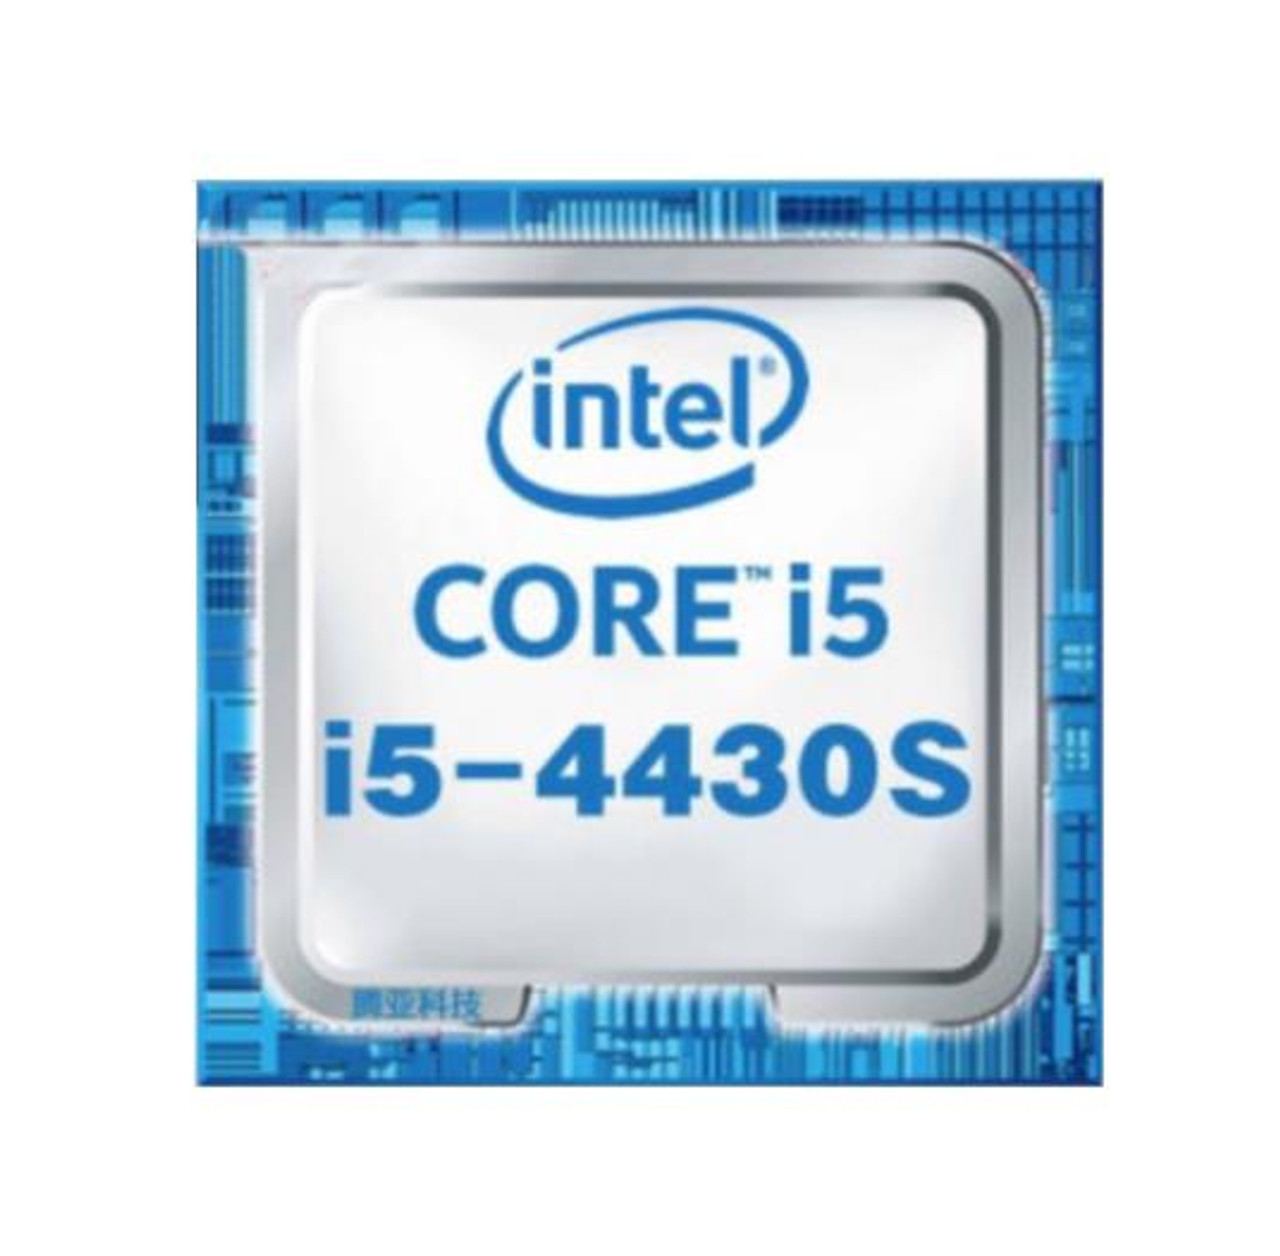 Dell 2.70GHz 5.00GT/s DMI2 6MB L3 Cache Intel Core i5-4430S Quad-Core Processor Upgrade